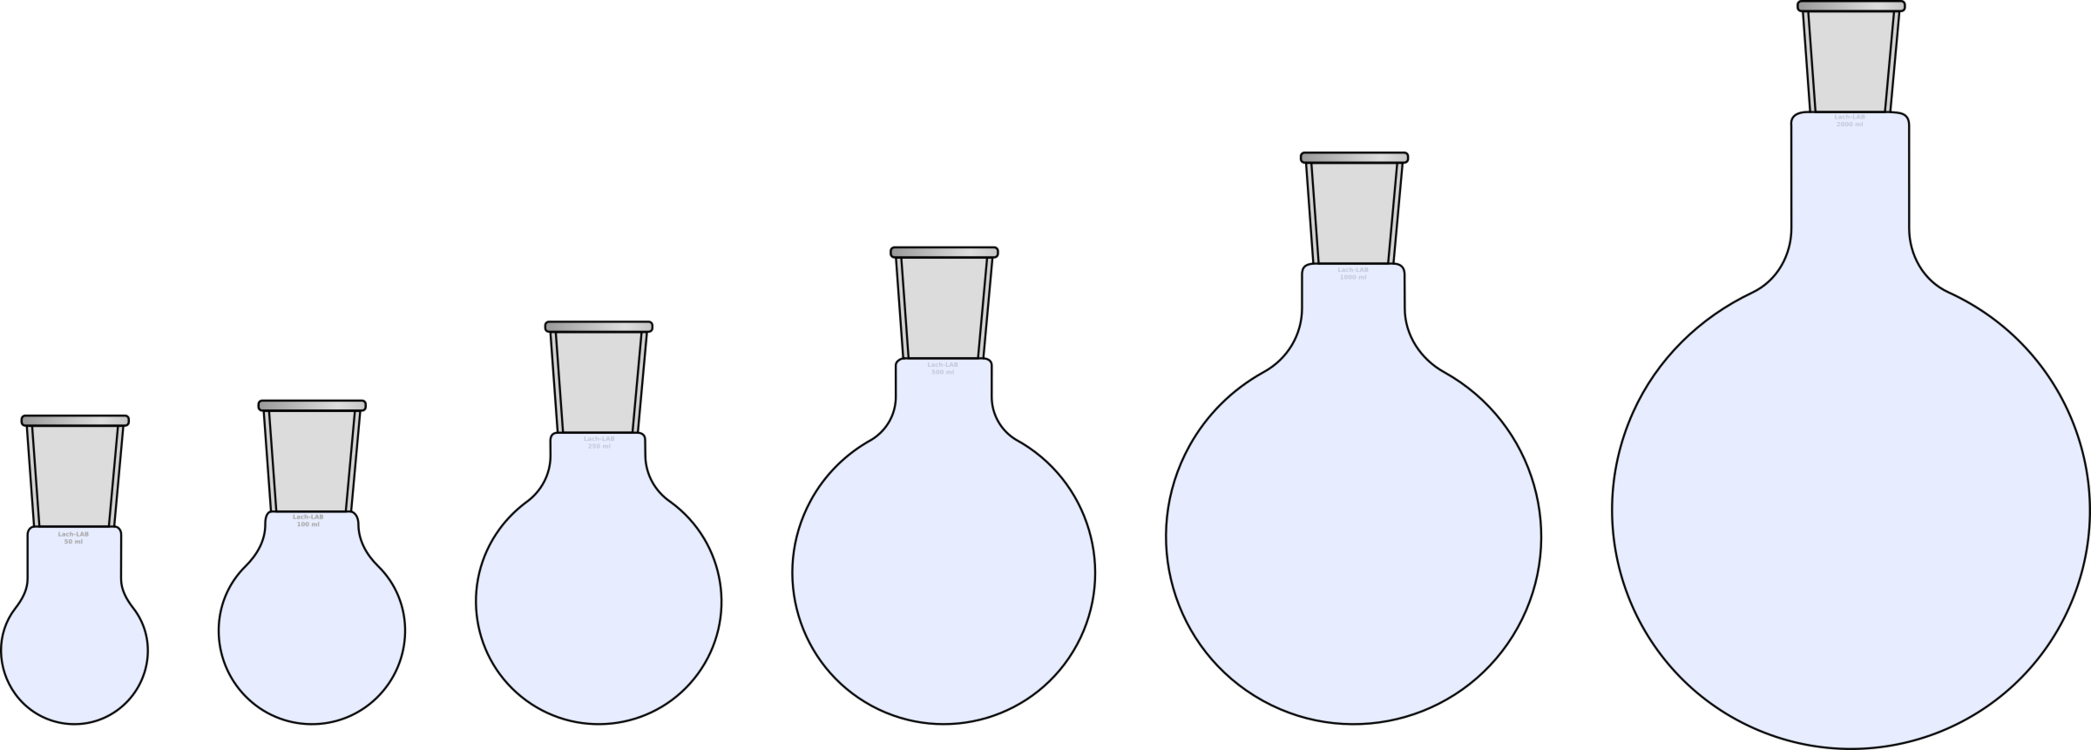 Graduated Flasks Size Comparison PNG